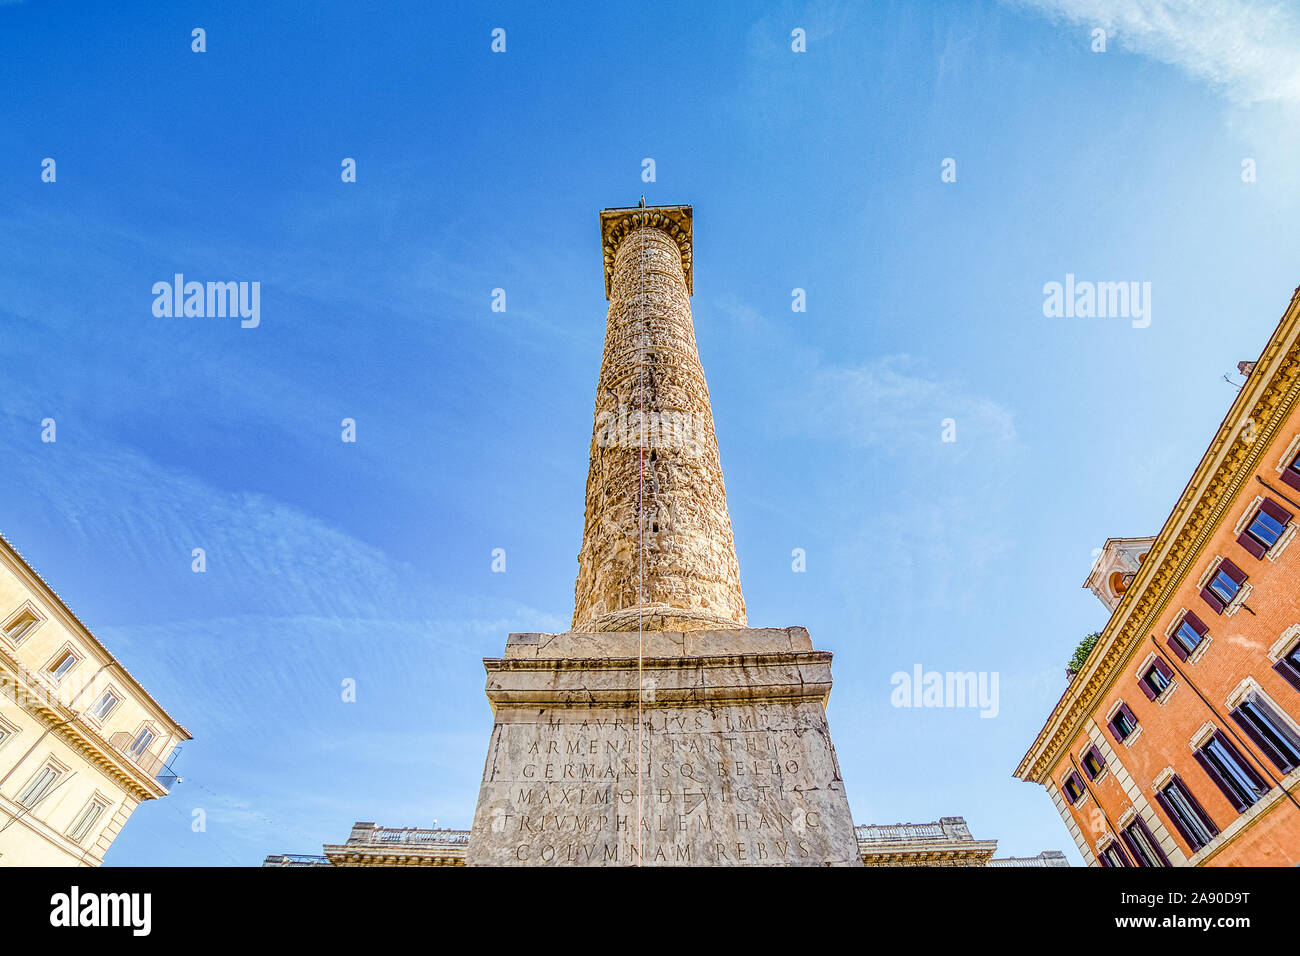 Rom, Italien, 18. Oktober, 2019: Licht erleuchtet ist die Spalte des Marcus Aurelius in der Piazza Colonna in Rom Stockfoto